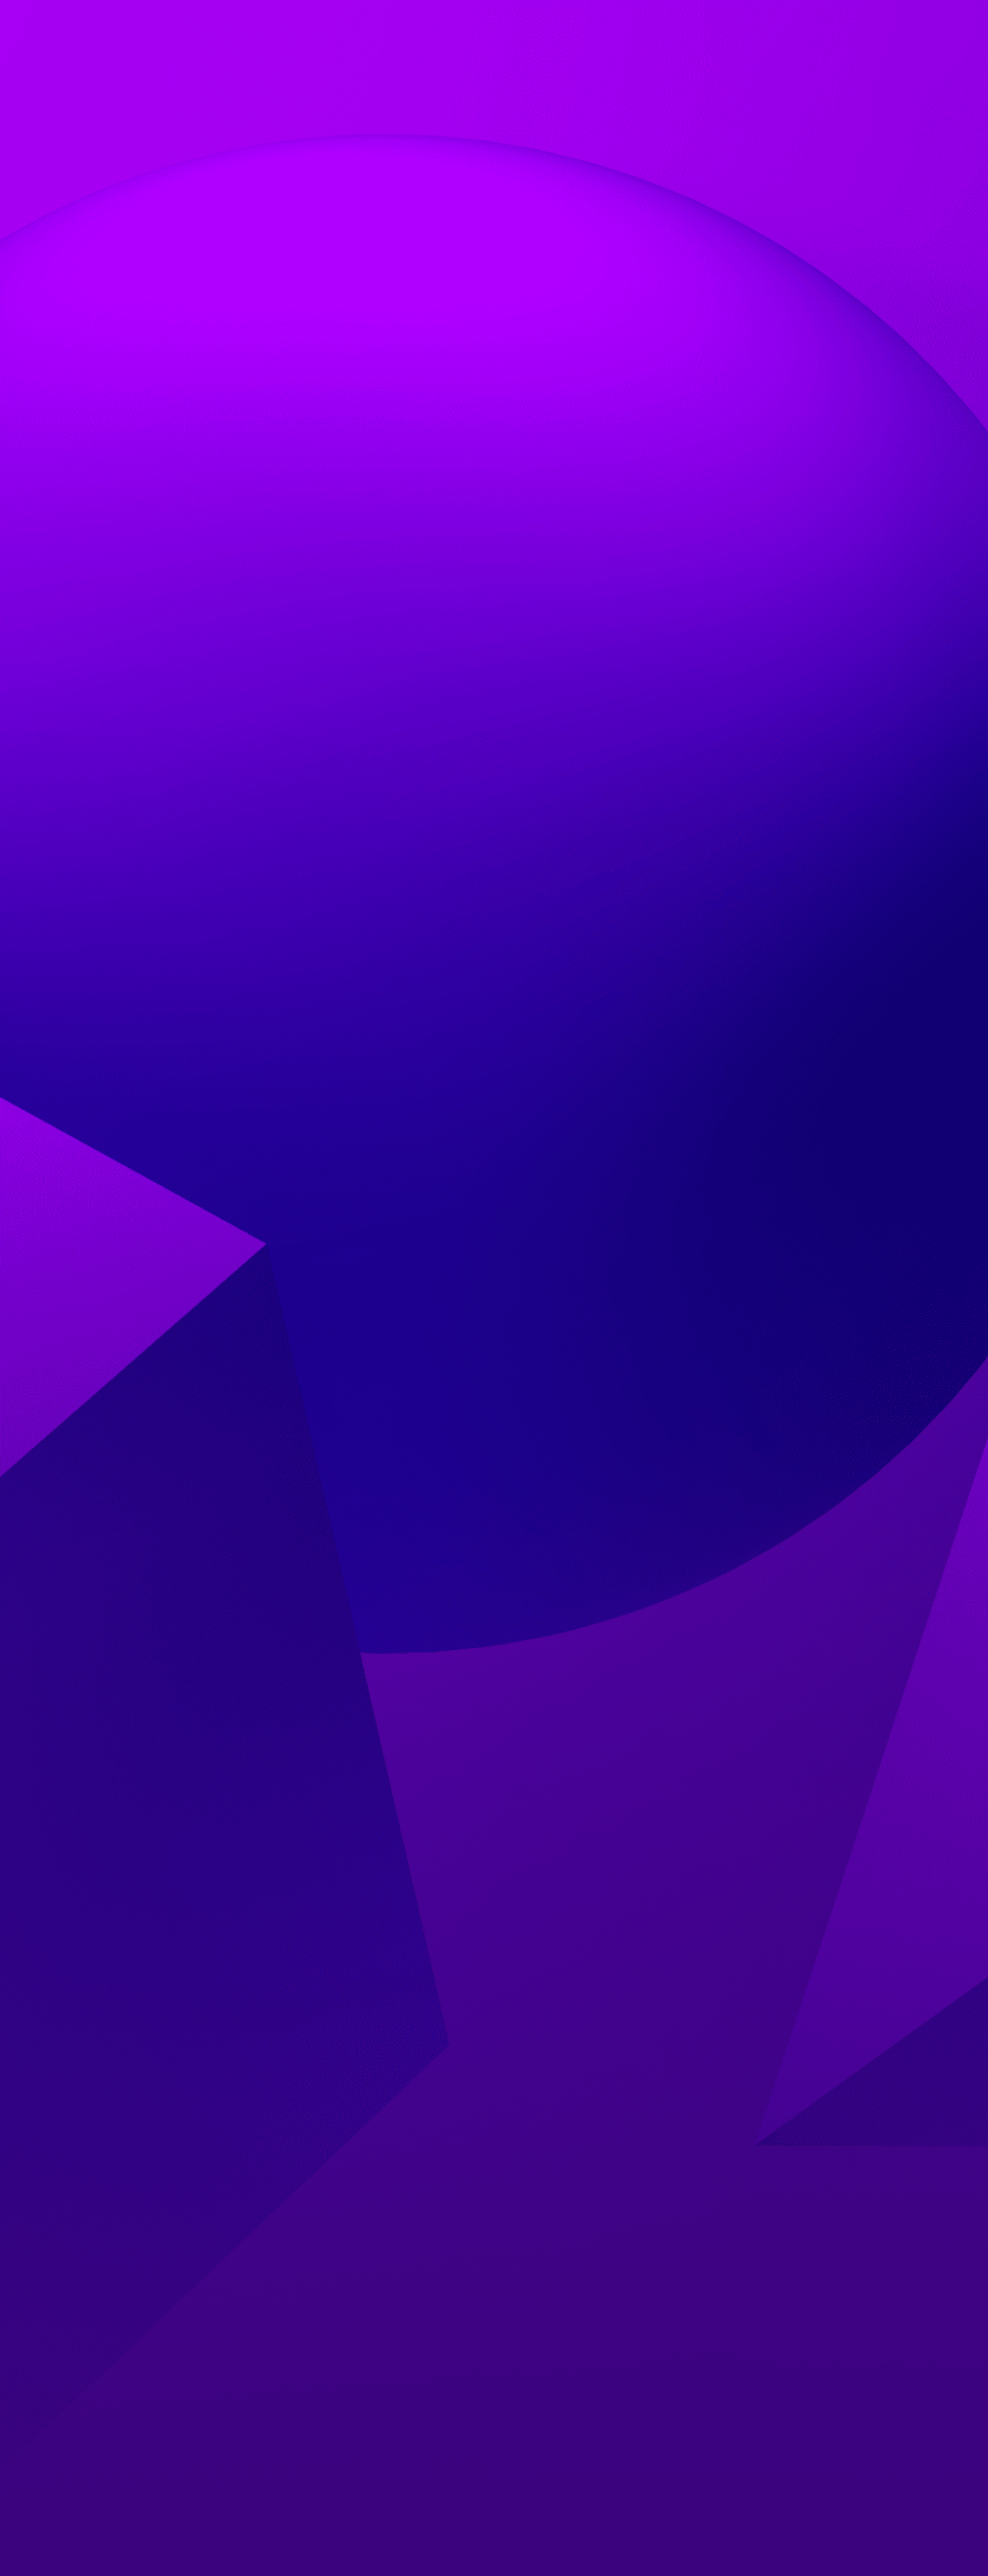 Un fond violet texturé avec 3 formes - une sphère, un cône et un cube